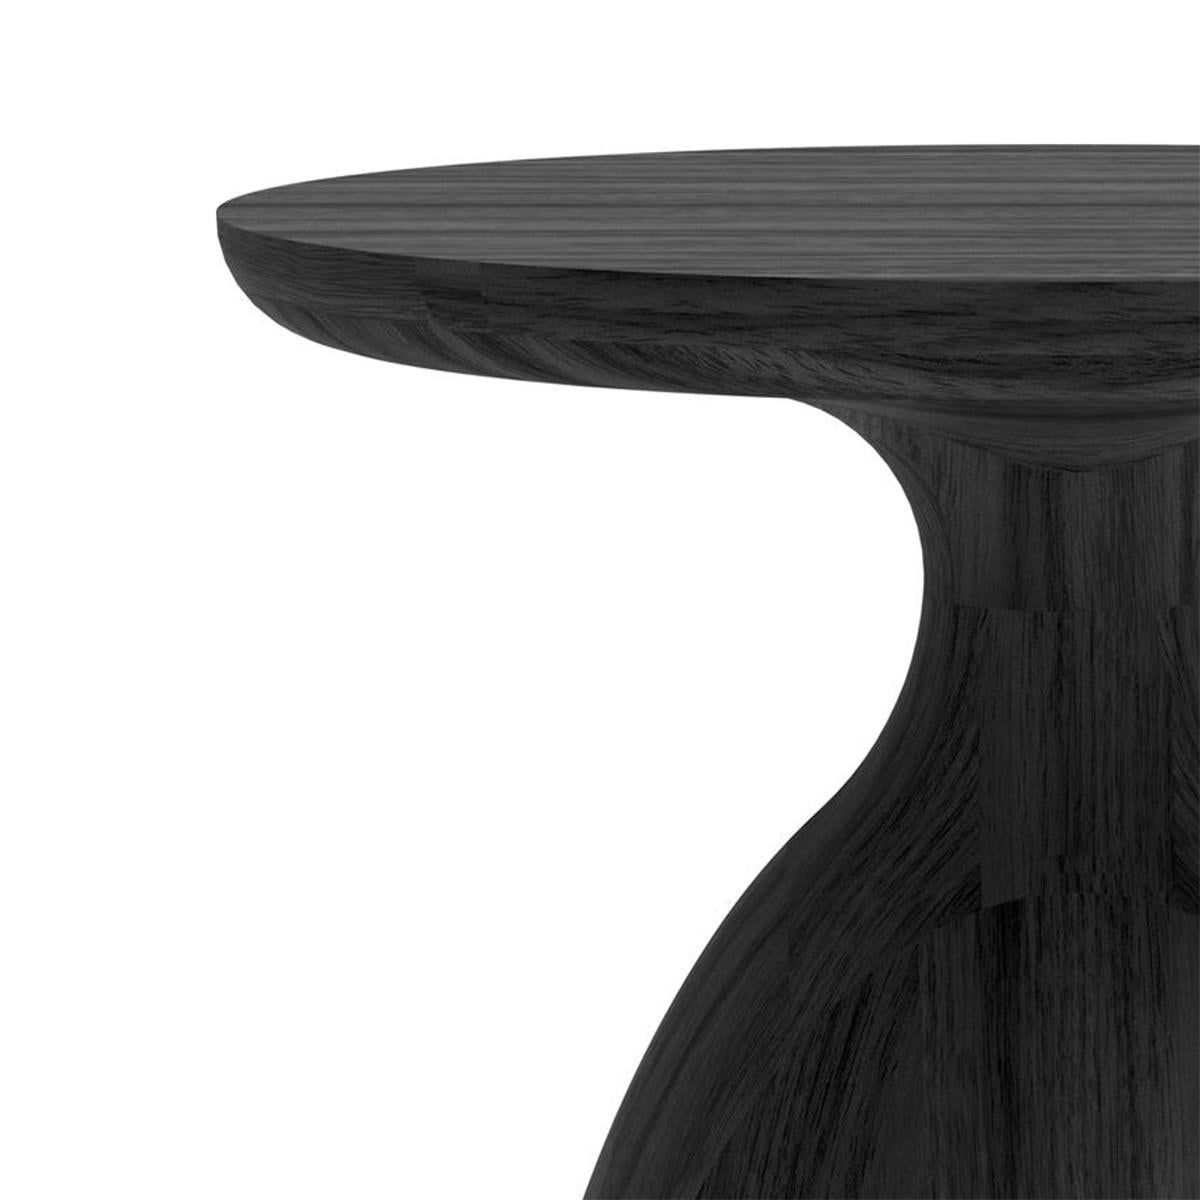 Table d'appoint Eko Black Large avec toute la structure en
Teck massif teinté noir. Teck à l'eau 
traitement répulsif.